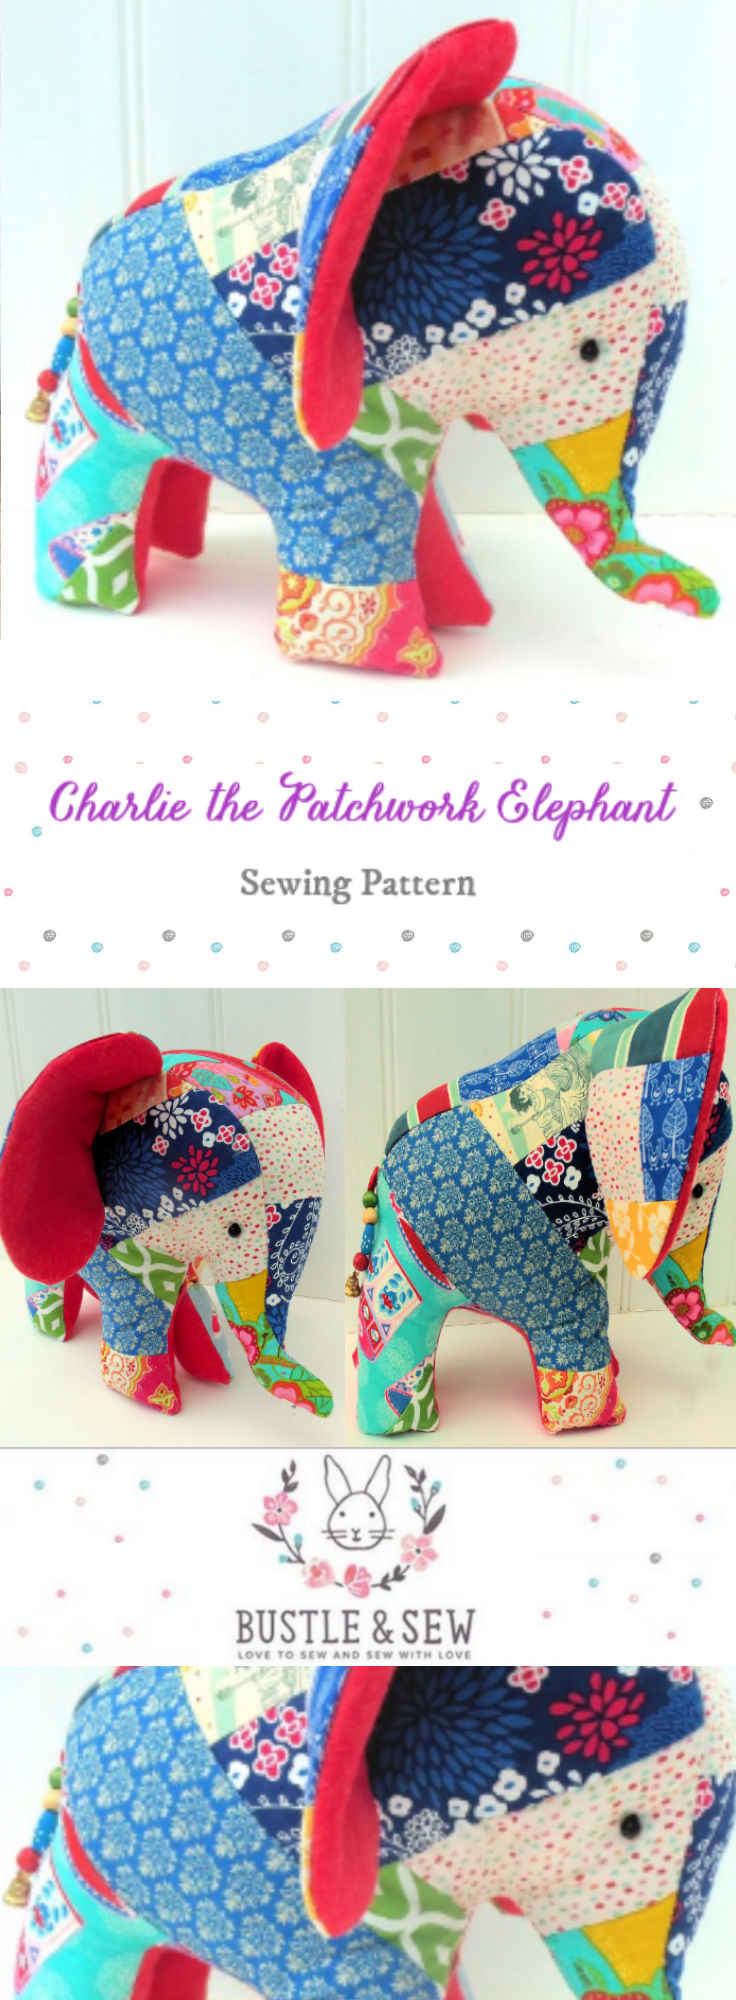 charlie-the-elephant